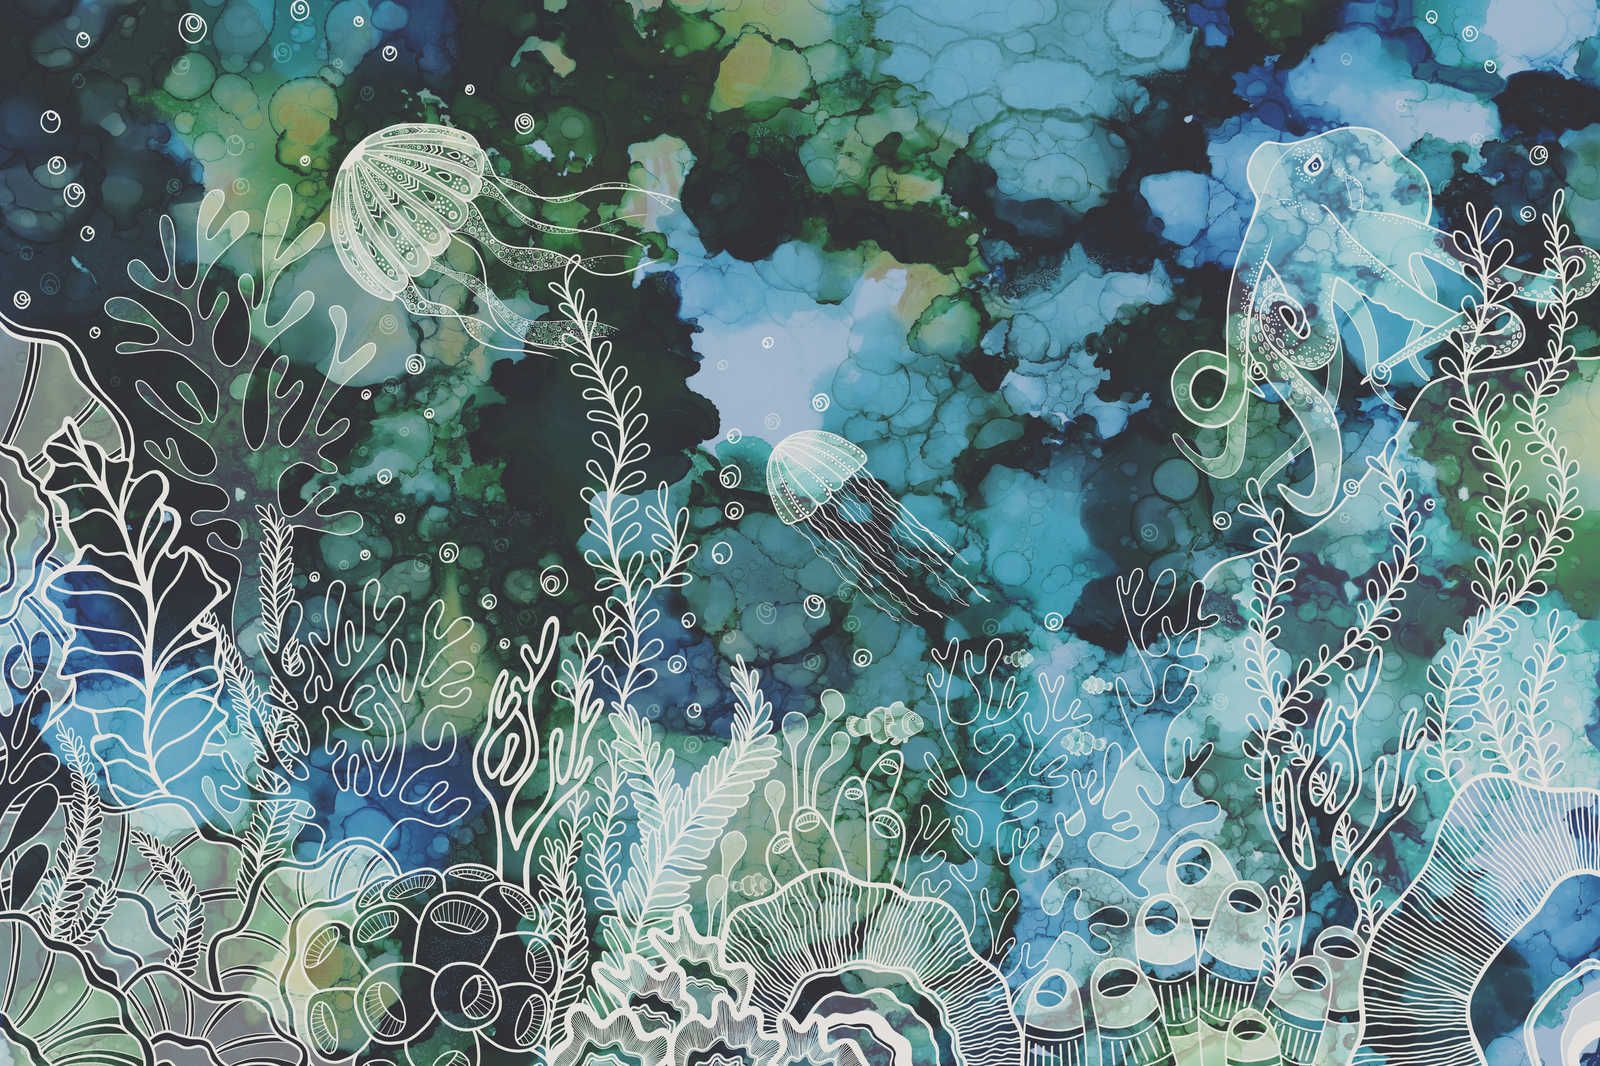             Canvas schilderij met onderwater koraalrif in acrylverf - 0,90 m x 0,60 m
        